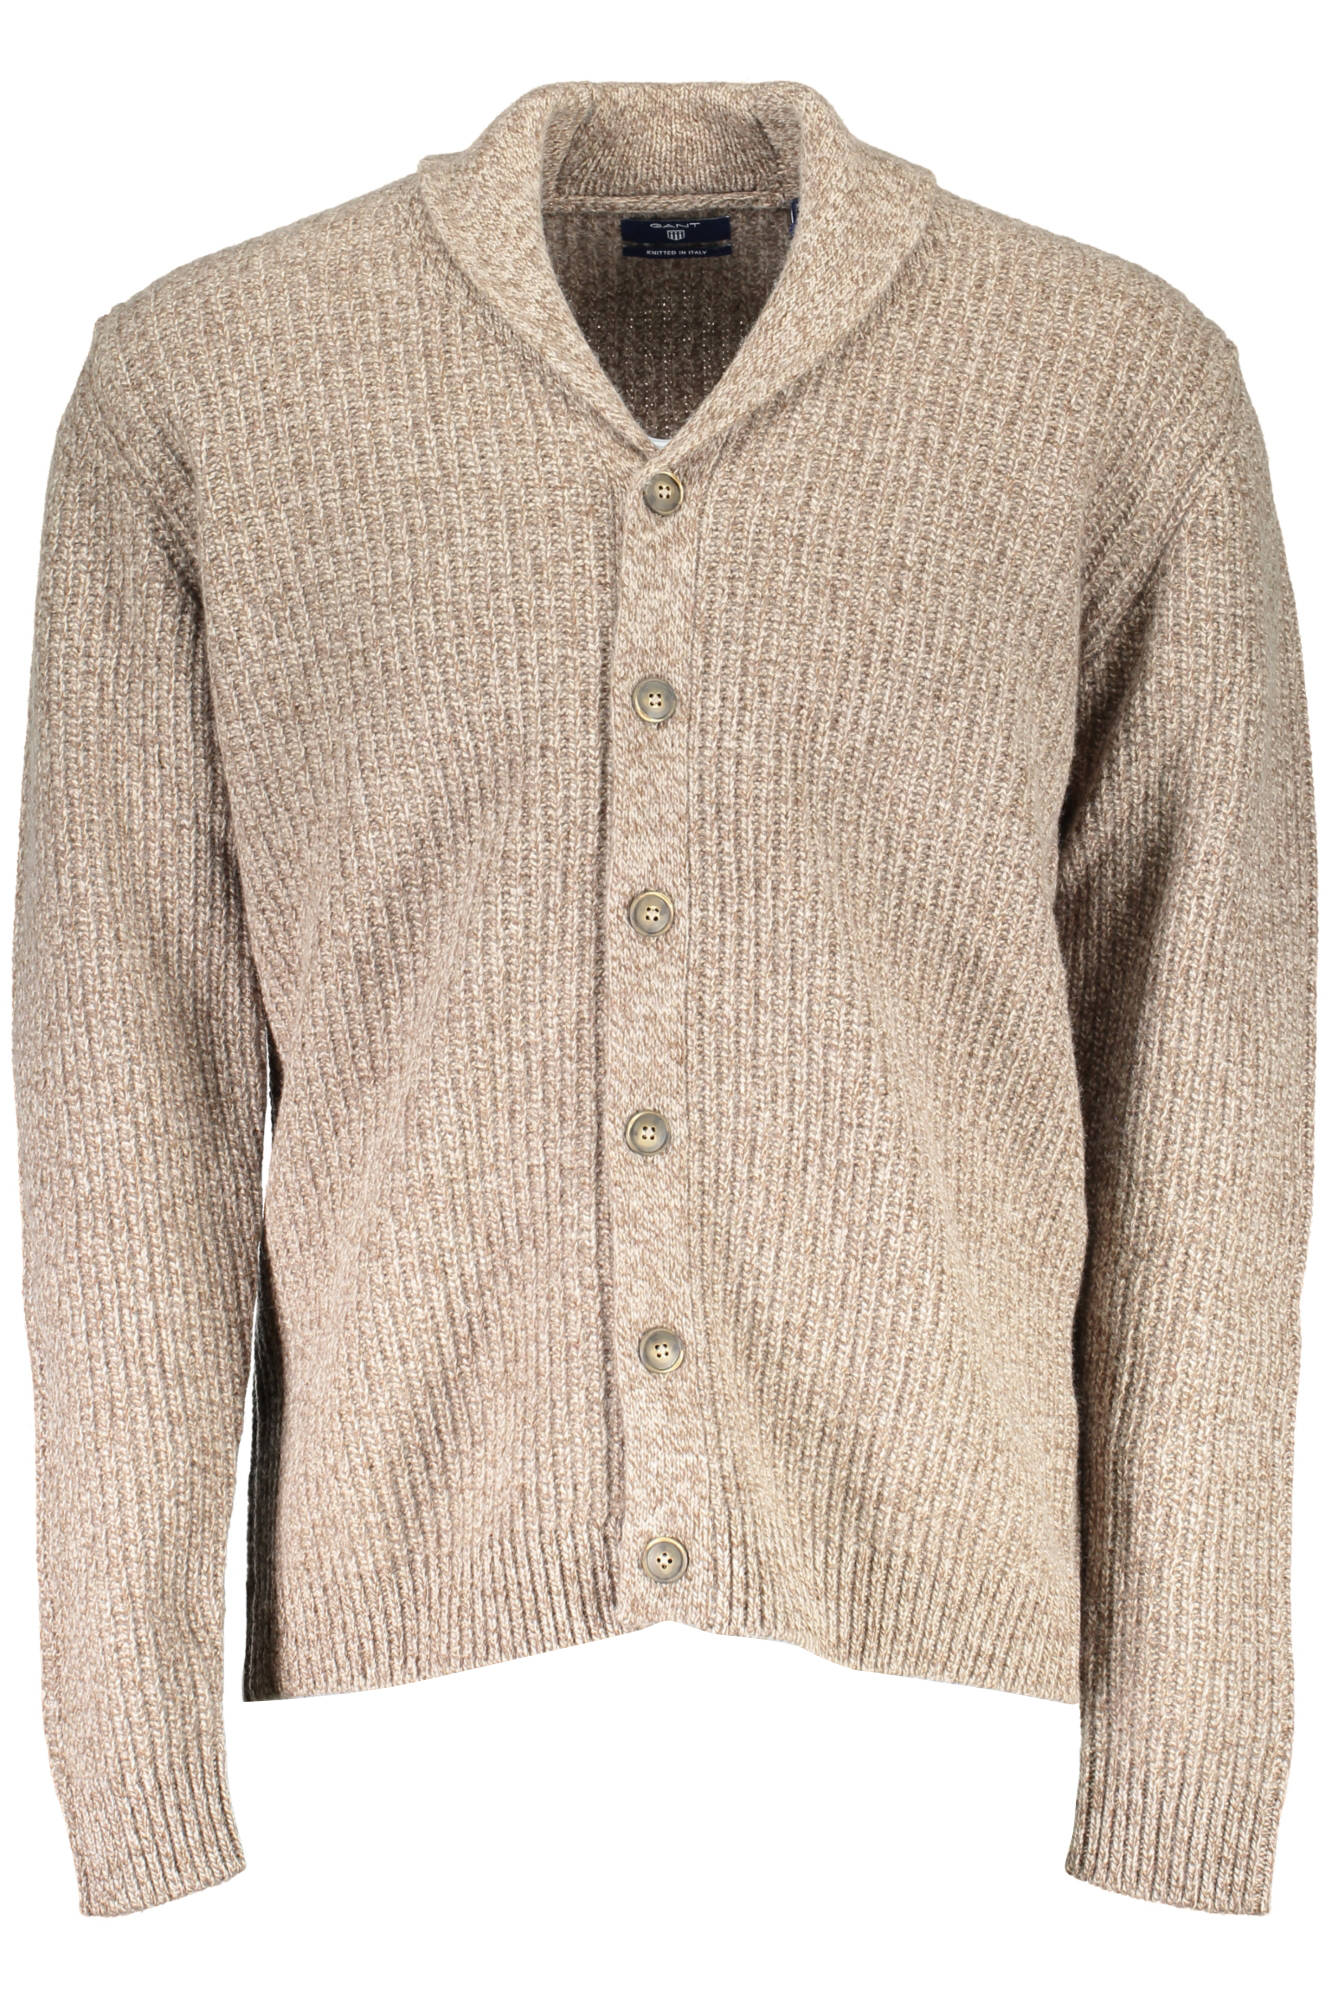 GANT Men's Cardigan Sweater